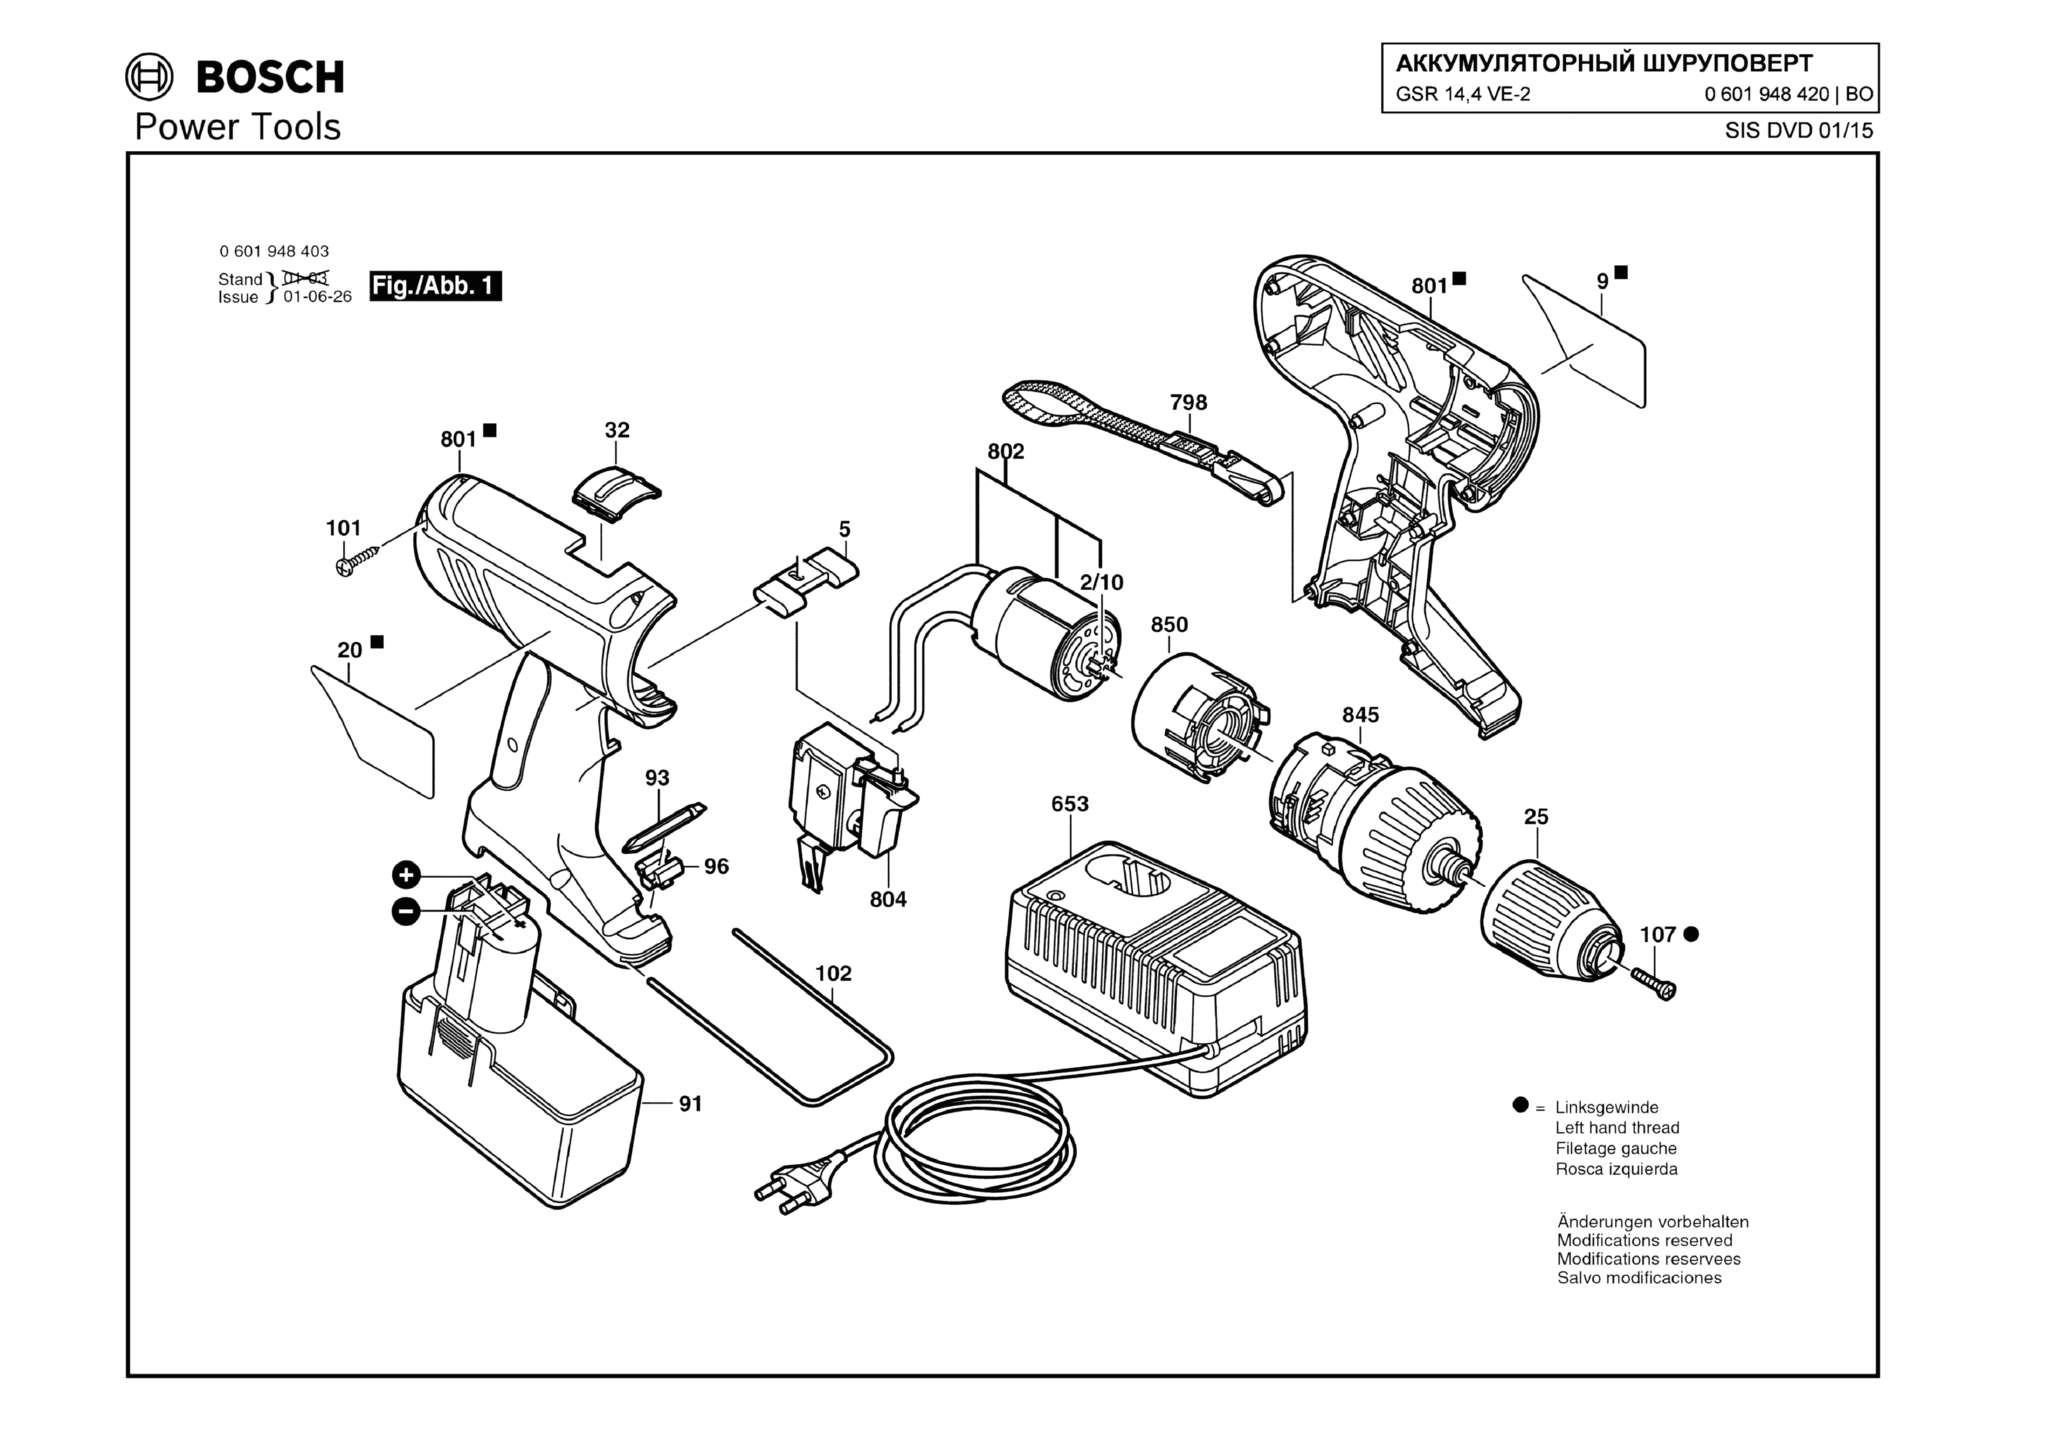 Запчасти, схема и деталировка Bosch GSR 14,4 VE-2 (ТИП 0601948420)